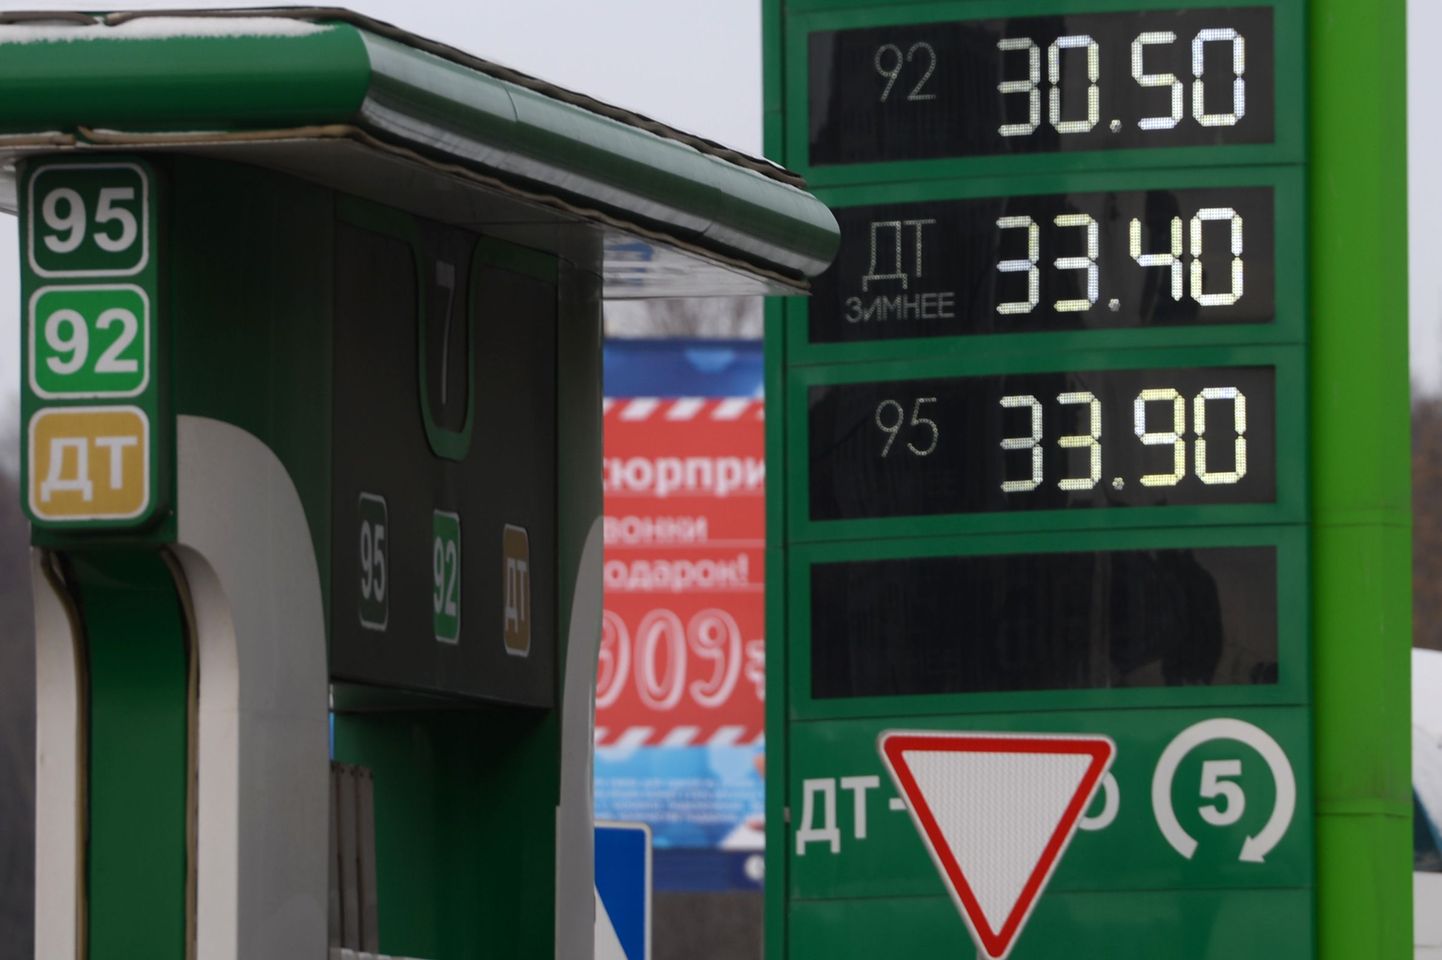 Vene valitsus üritab hoida kütusehindu rublades enam-vähem stabiilsena.